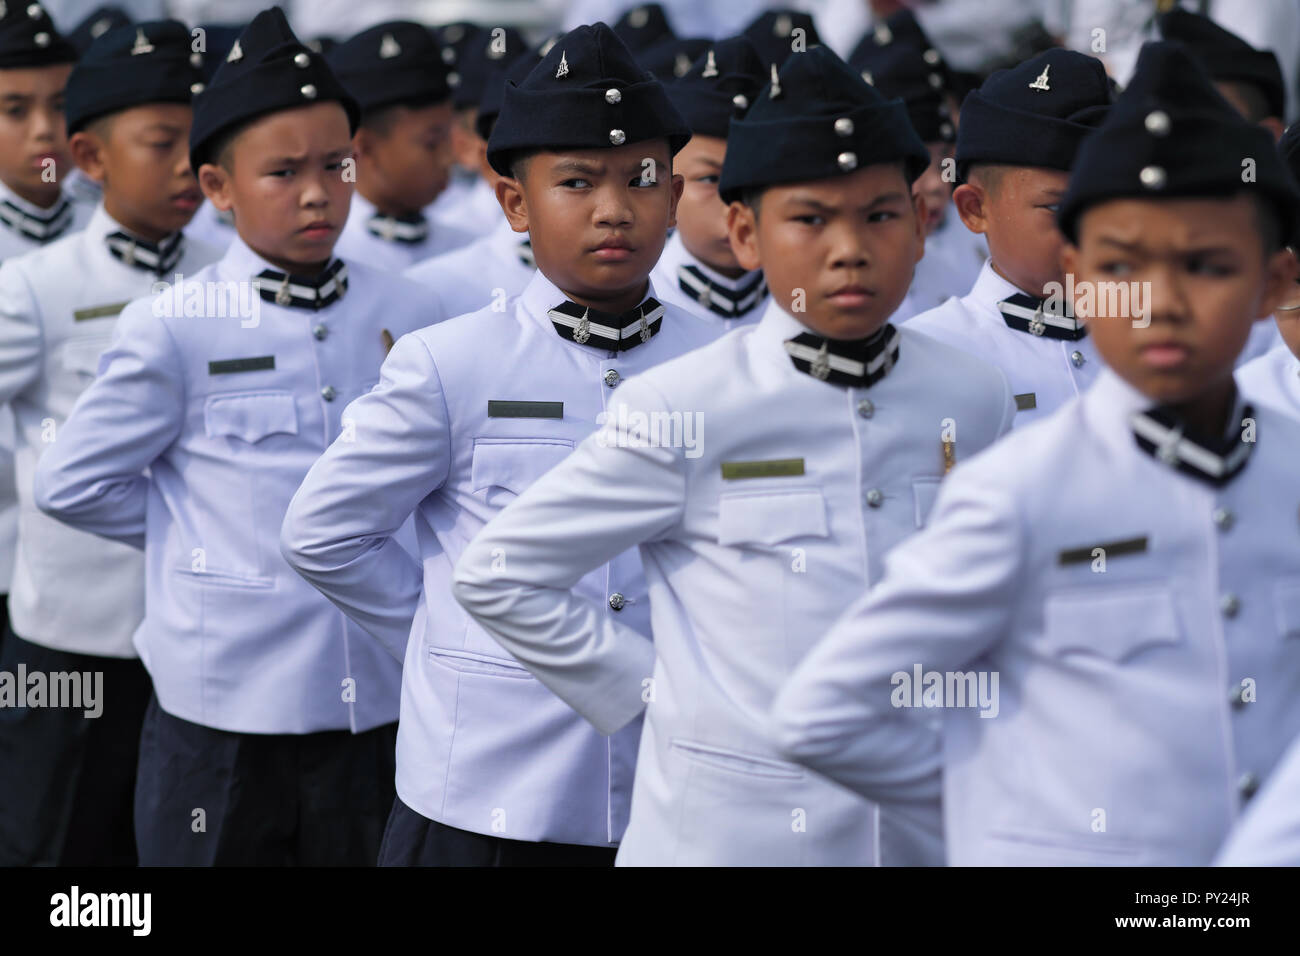 Des élèves thaïlandais se tenant à l'attention, de style militaire, à l'occasion de la Journée Chulalongkorn en mémoire de l'ancien roi Chulalongkorn, Bangkok, Thaïlande Banque D'Images